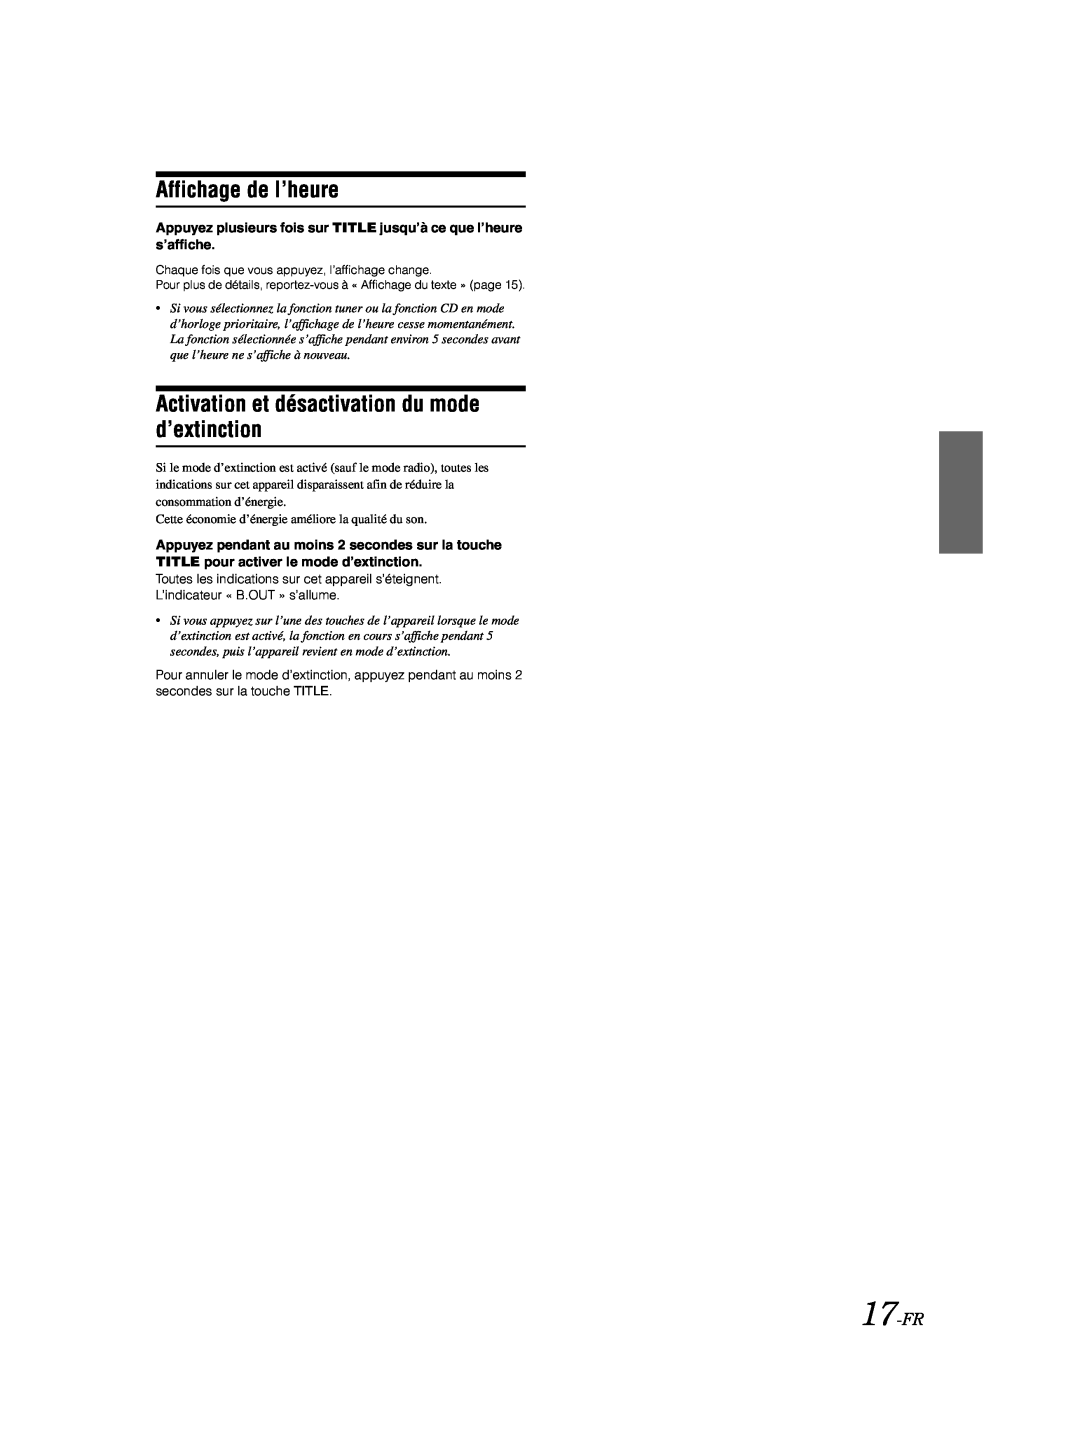 Alpine CDA-9885 owner manual Affichage de l’heure, Activation et désactivation du mode d’extinction, 17-FR 